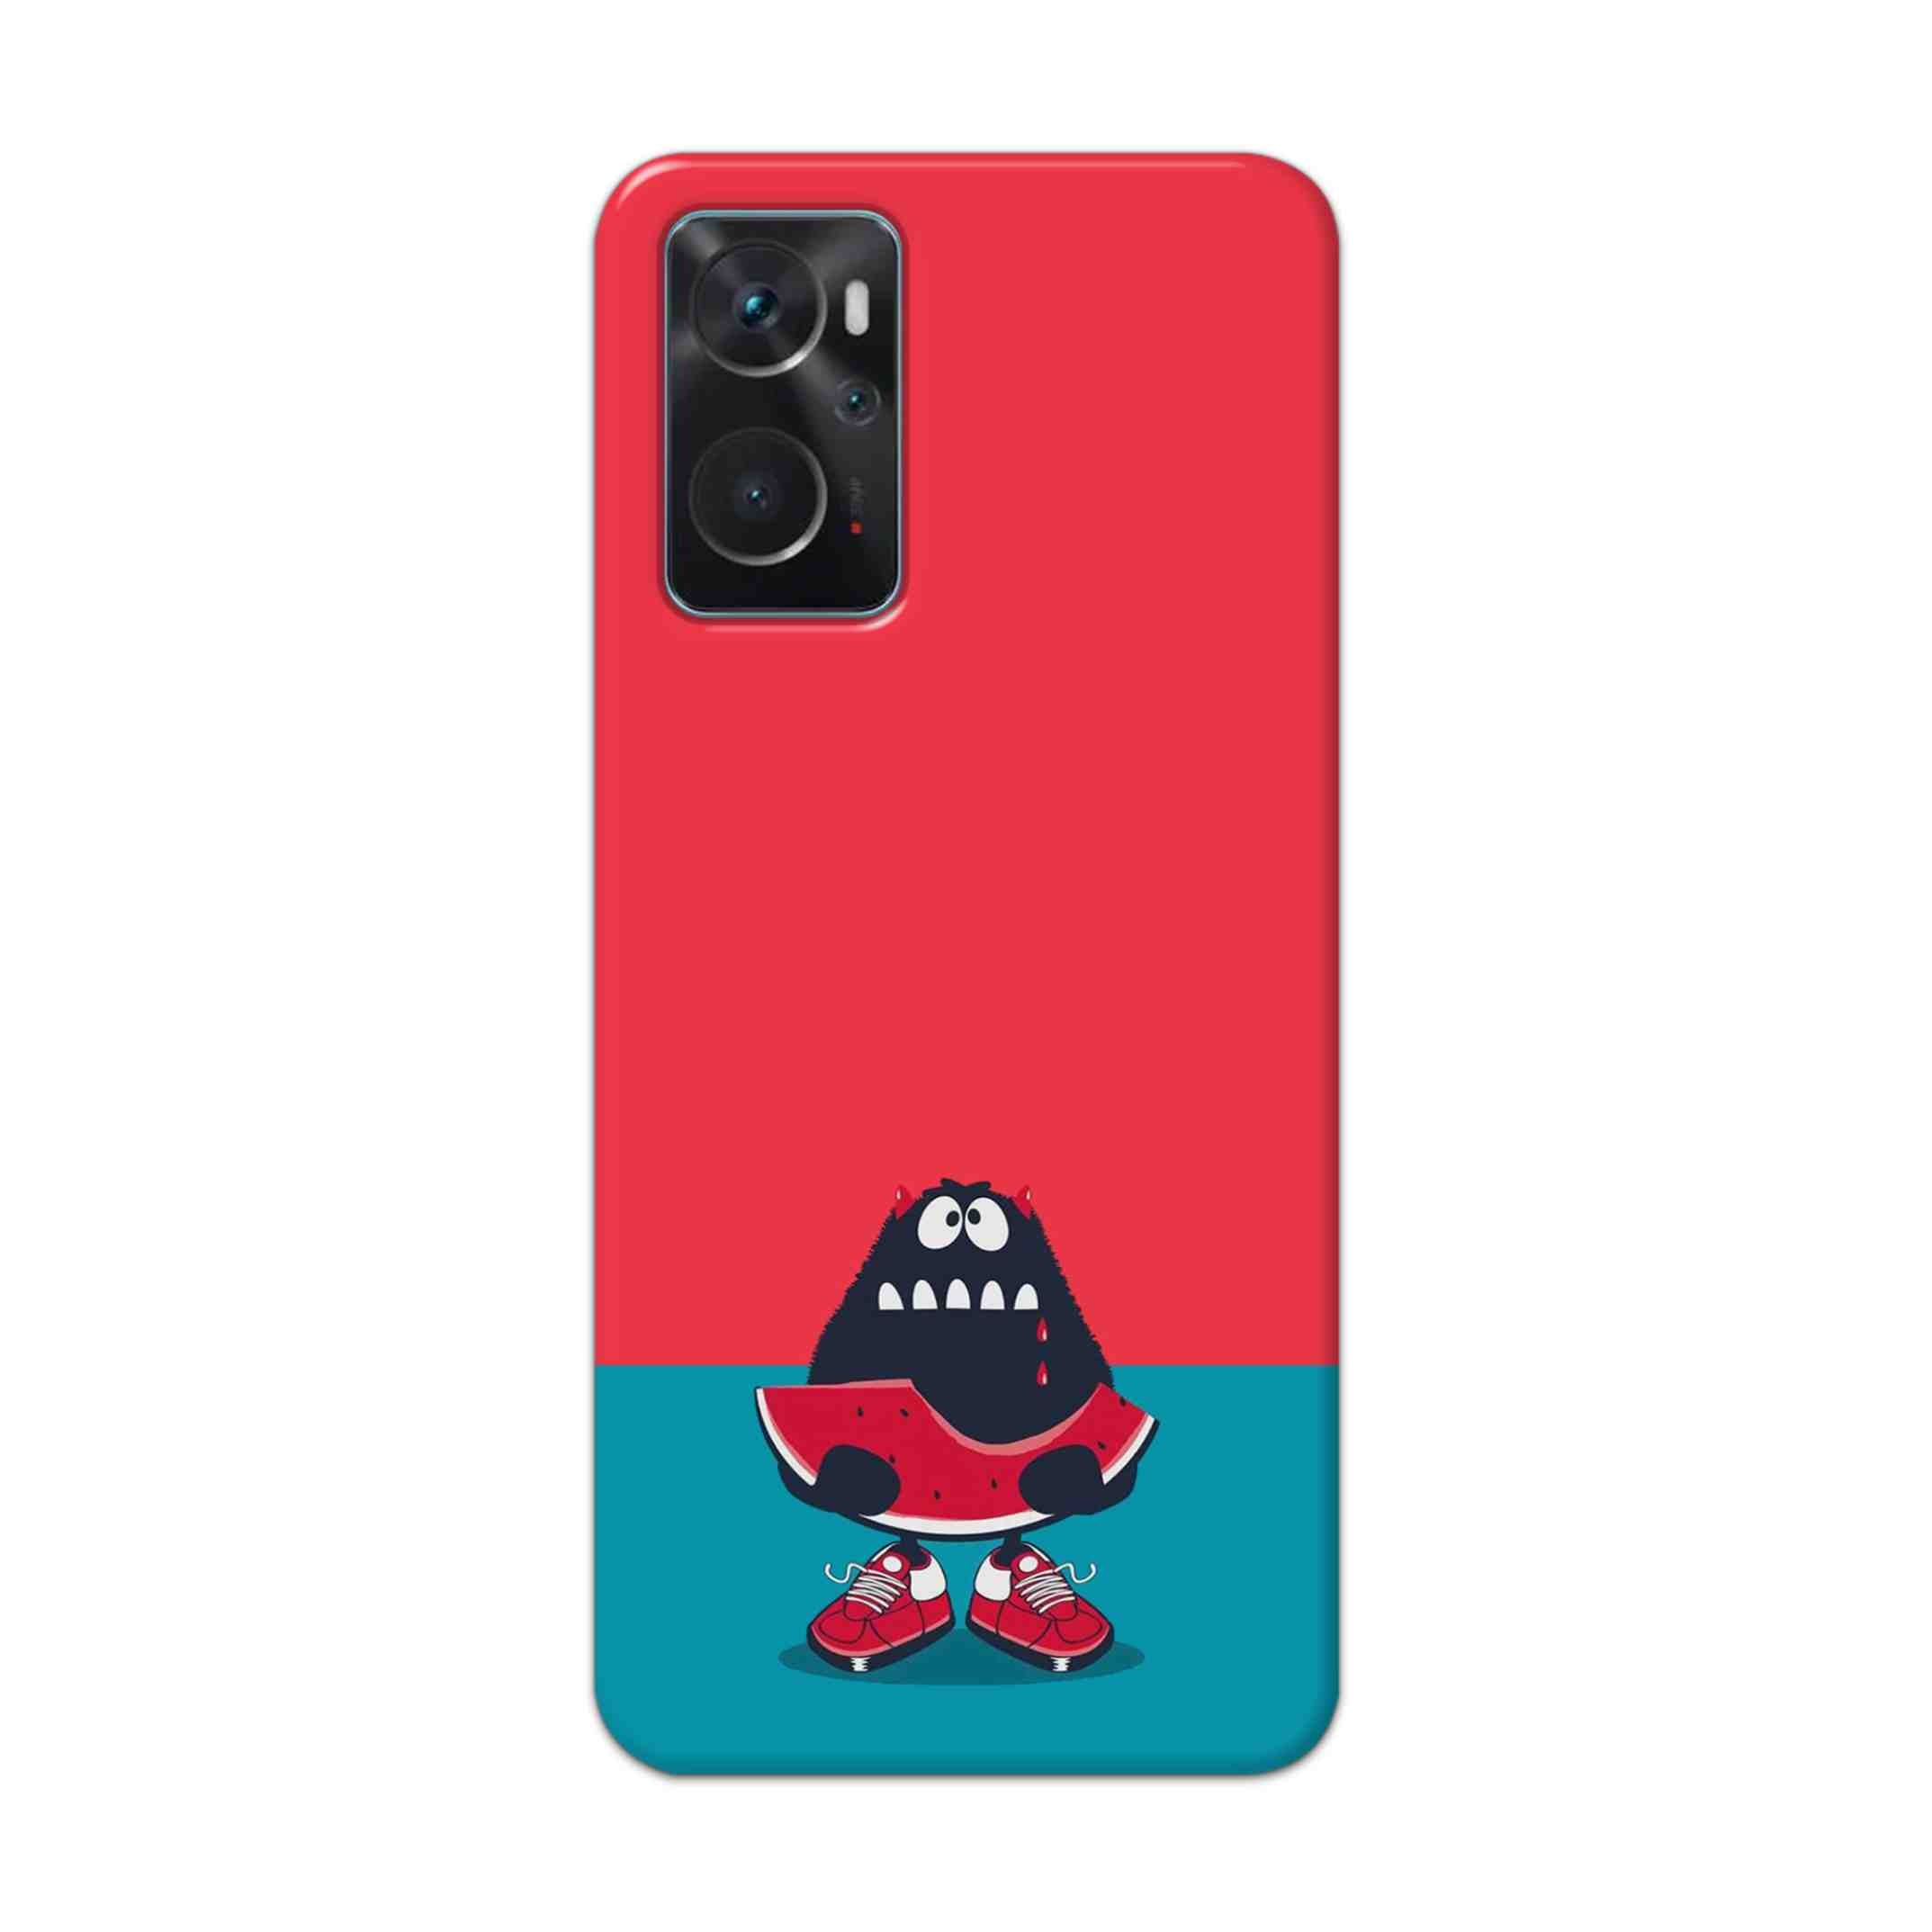 Buy Watermelon Hard Back Mobile Phone Case Cover For Oppo K10 Online